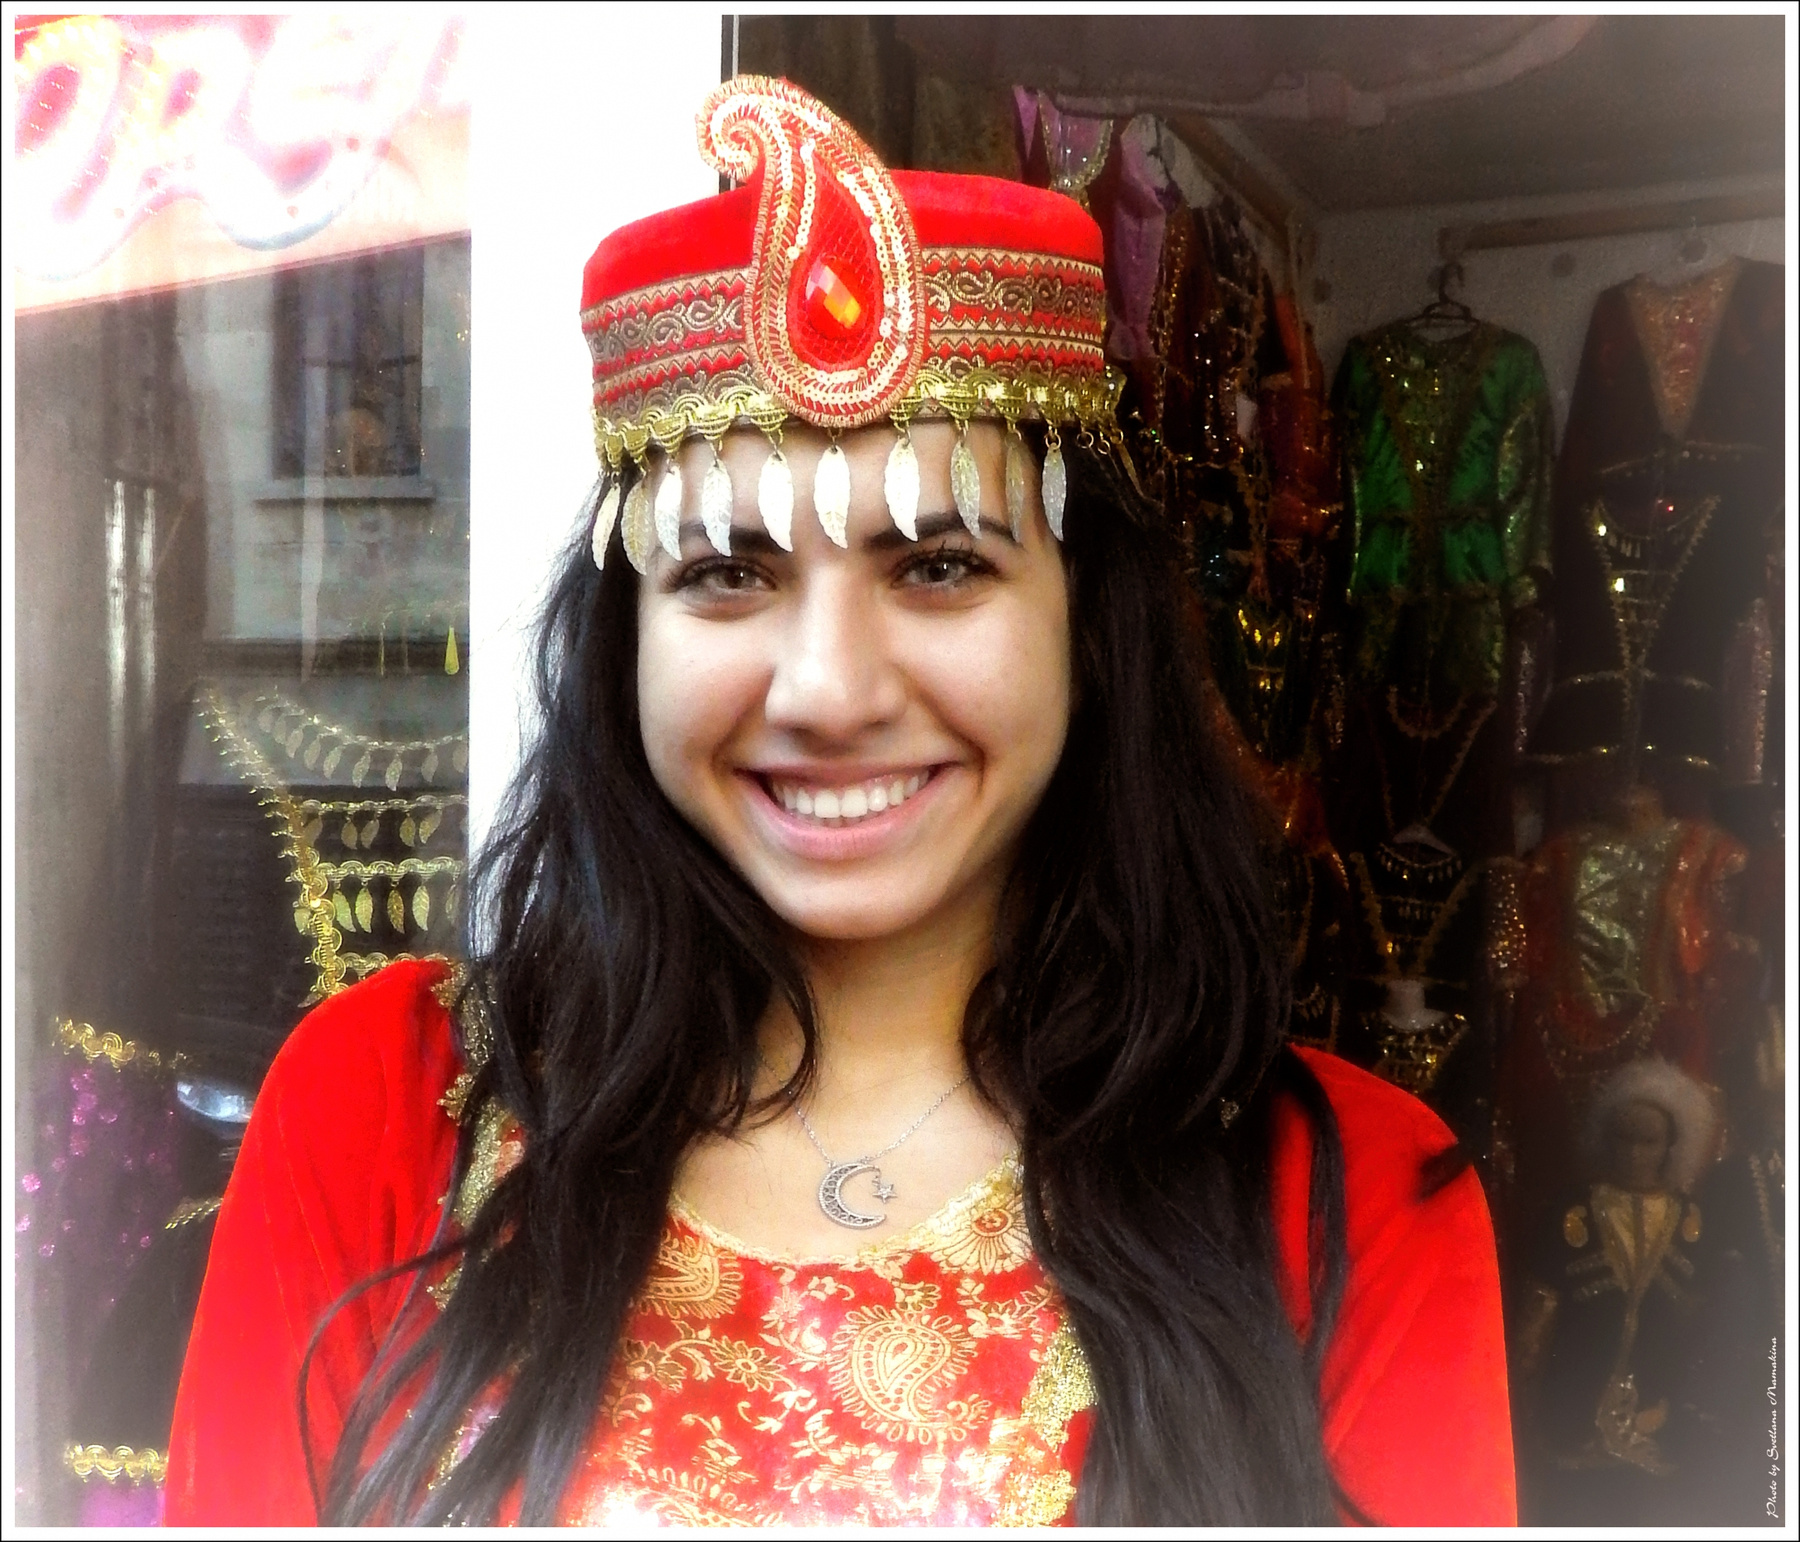 *Продавец восточных нарядов* фотография путешествие Баку магазин продавец портрет жанр Фото.Сайт Светлана Мамакина Lihgra Adventure